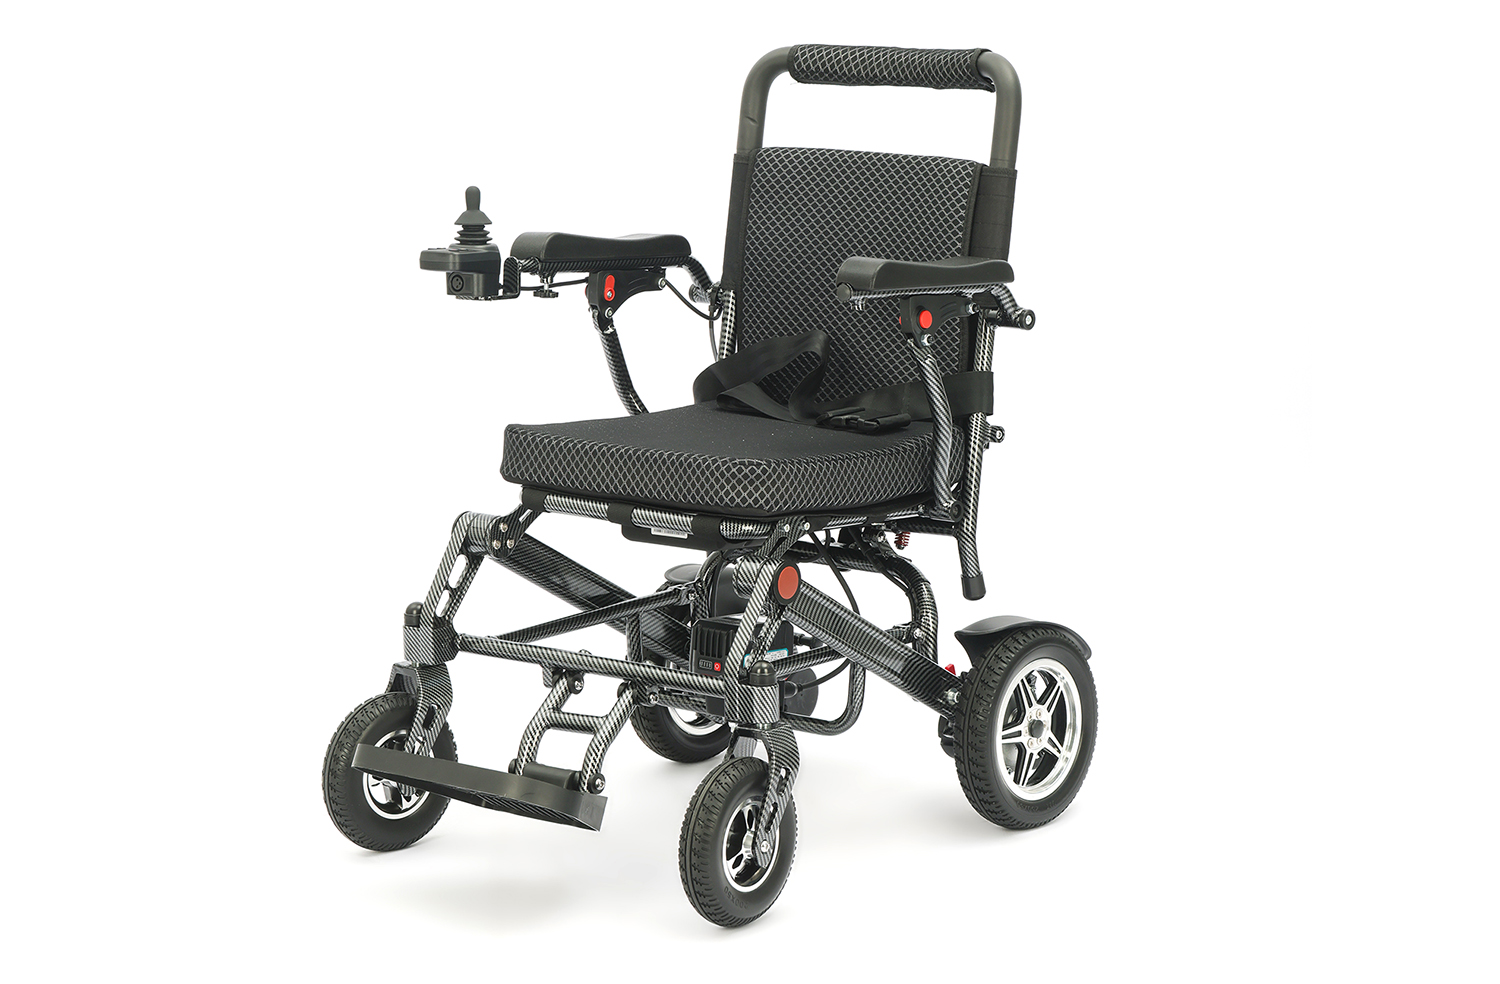 Takomstige ûntwikkelingstrend fan ljochtgewicht opklapbere elektryske rolstoel - Kieze de perfekte elektryske rolstoel foar jo mobiliteitsbehoeften